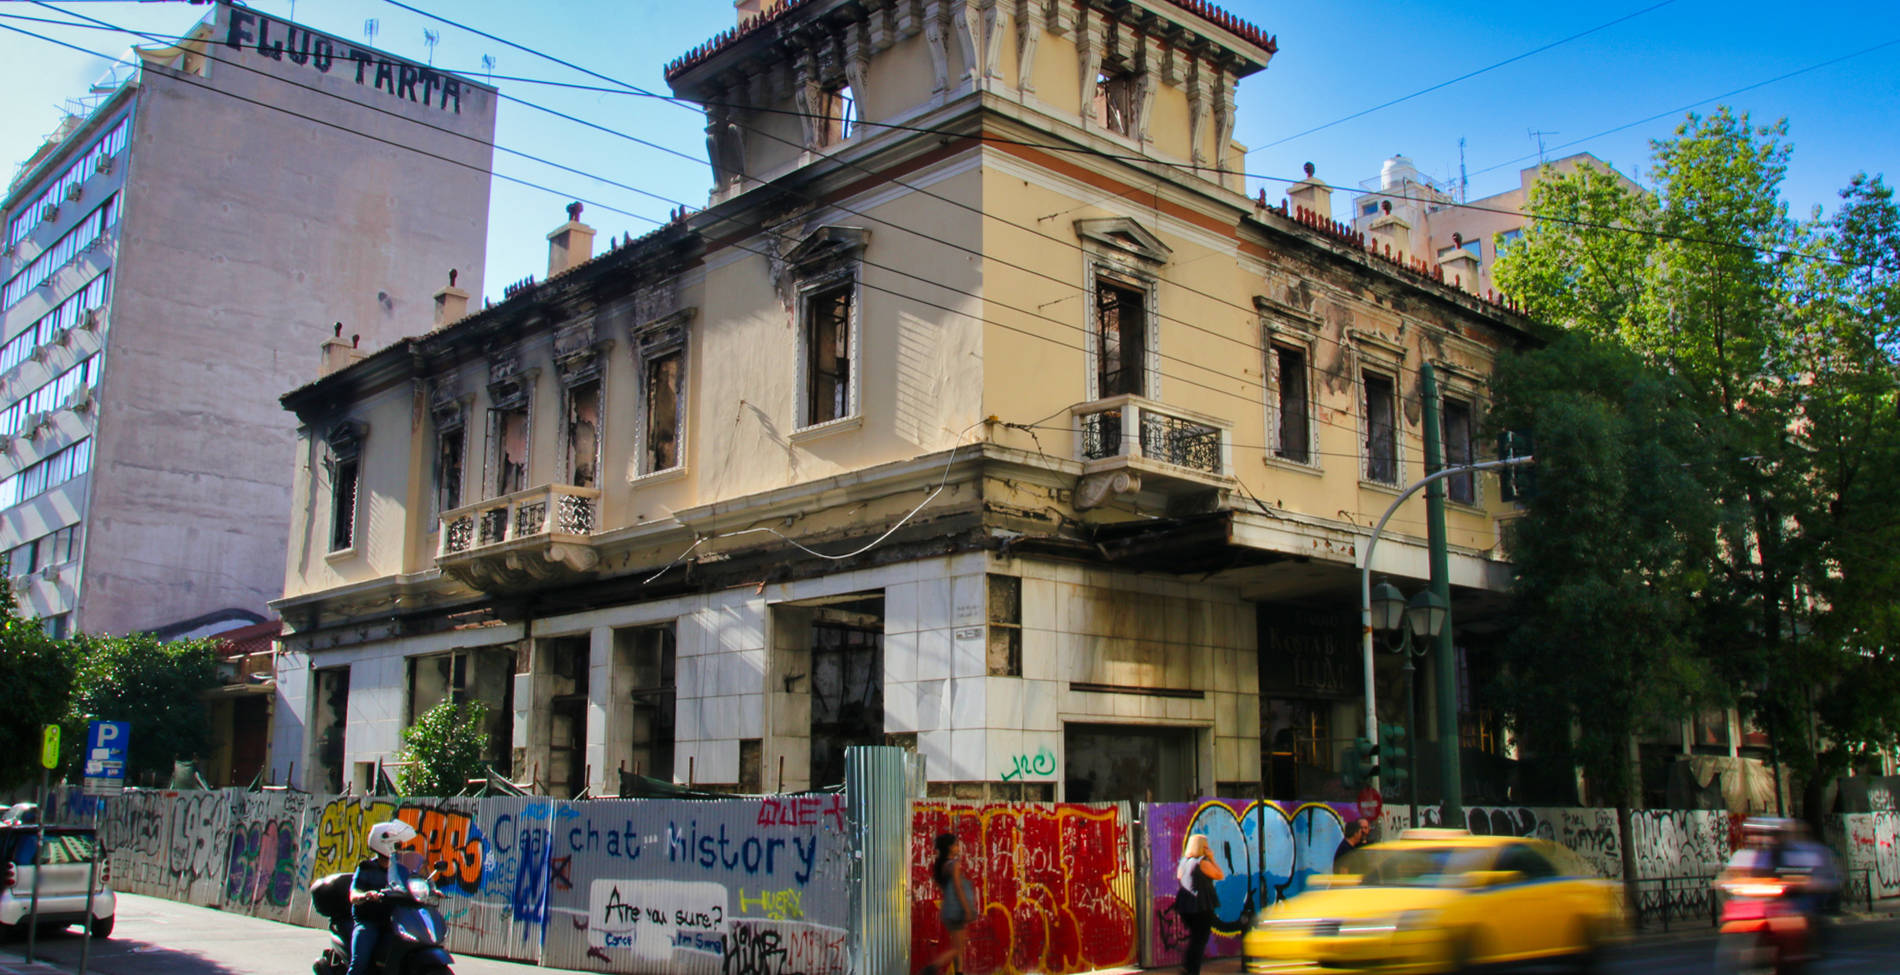 Τέλος εποχής για το πιο ιστορικό ντελικατέσεν της Αθήνας, έκλεισε μετά από 112 χρόνια